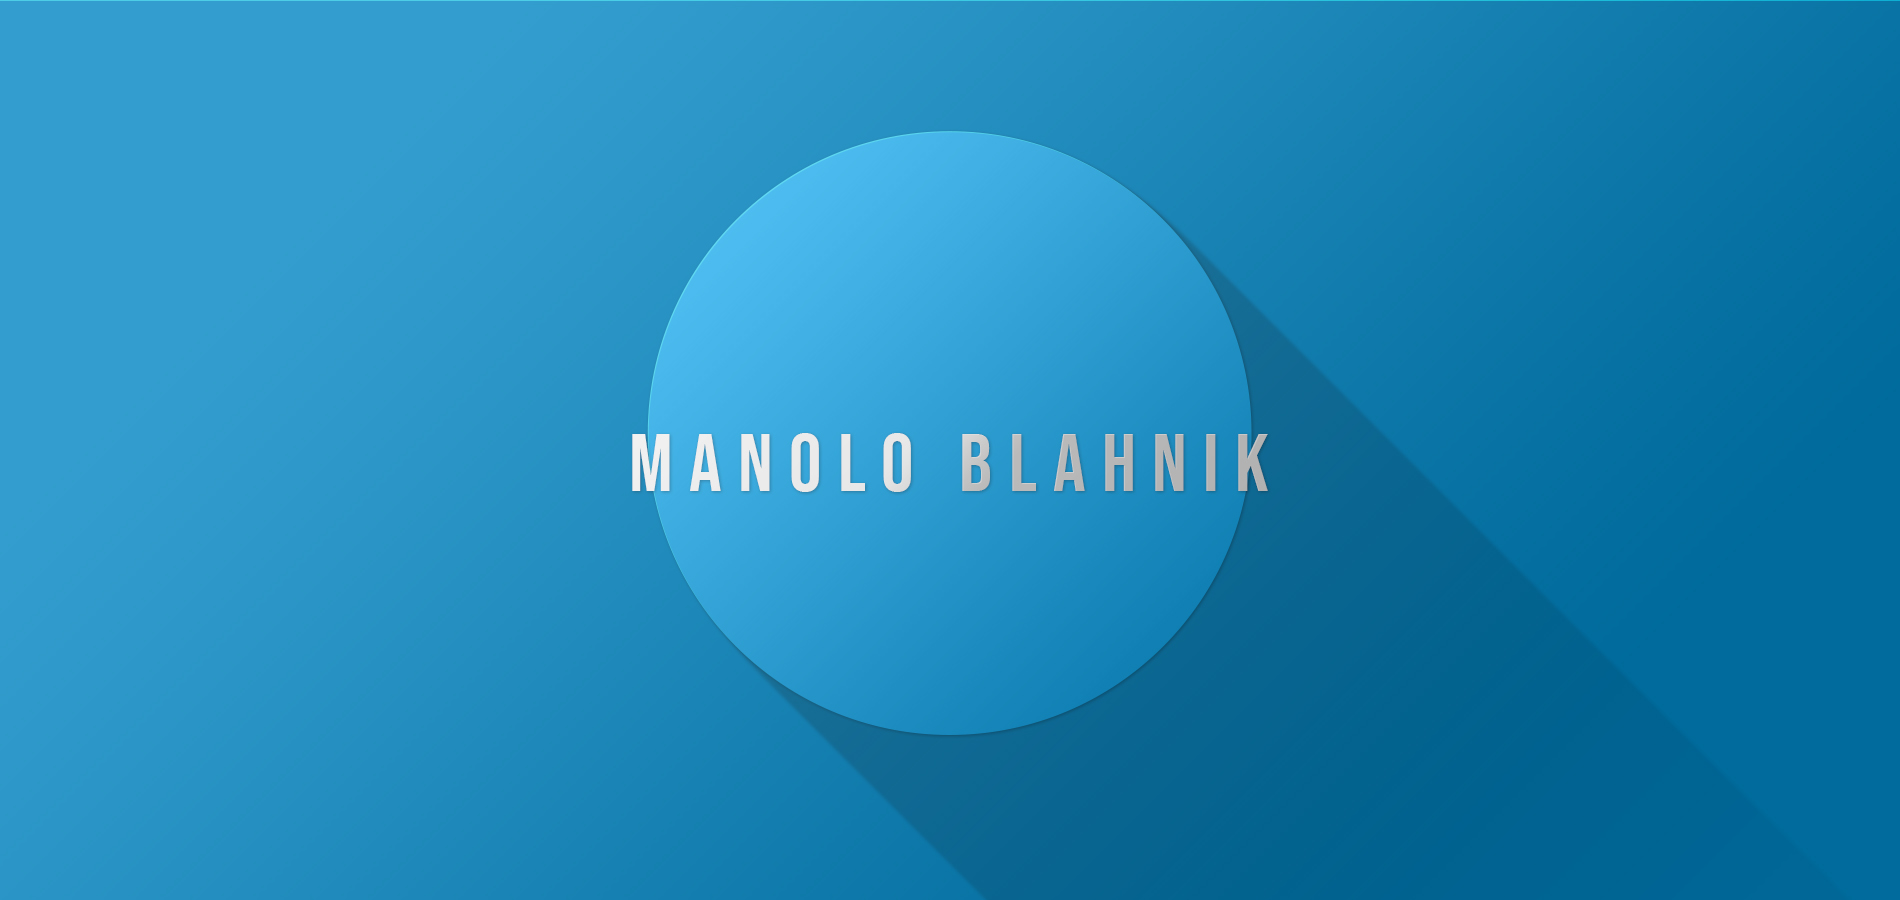 Manolo Blahnik: El Mago del Zapato de Alta Costura